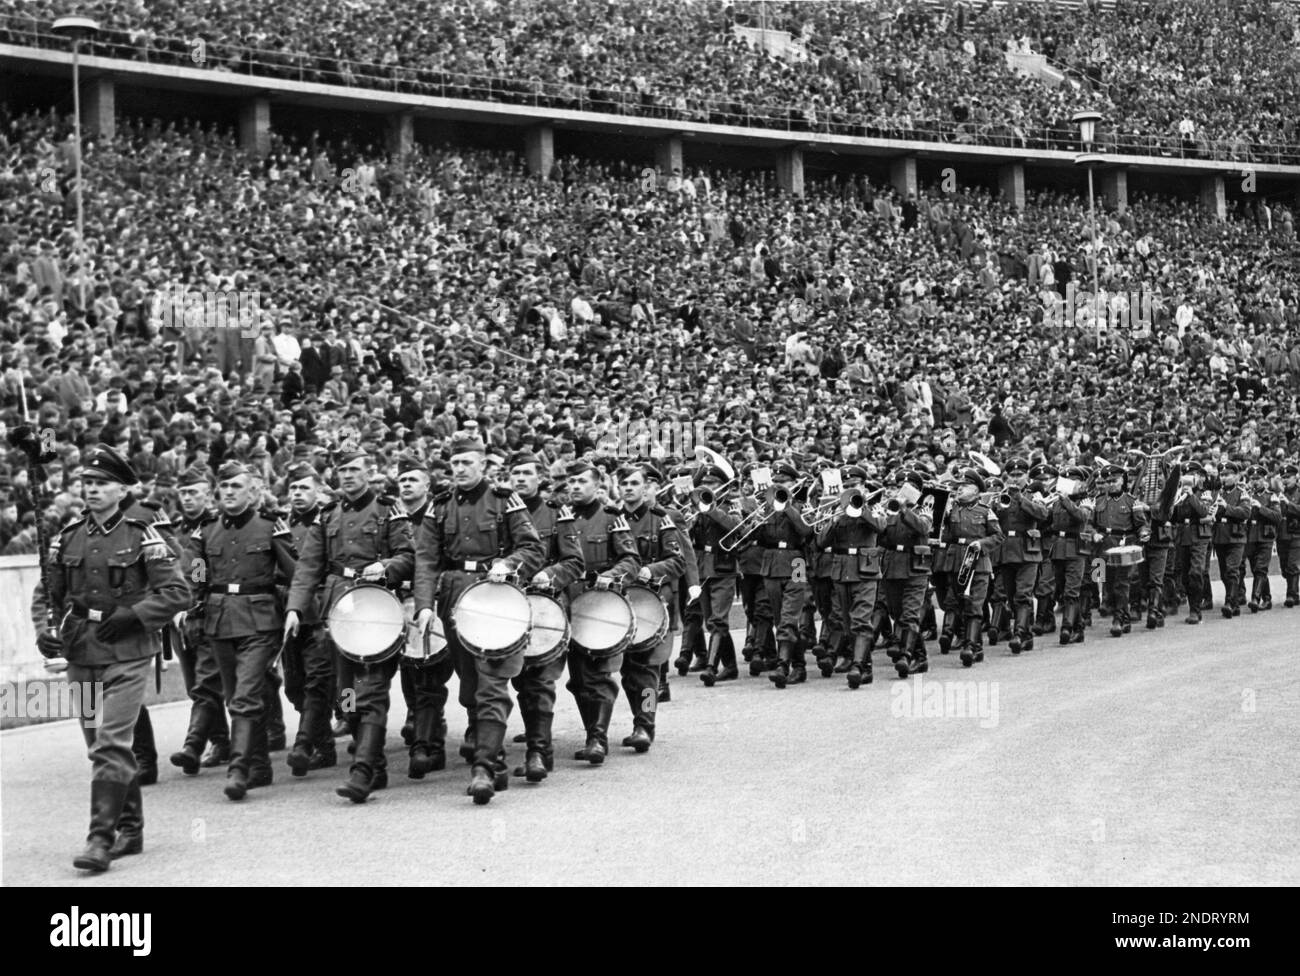 La marche du groupe militaire de la division SS Totenkopf avant le début d'un match de football. Banque D'Images